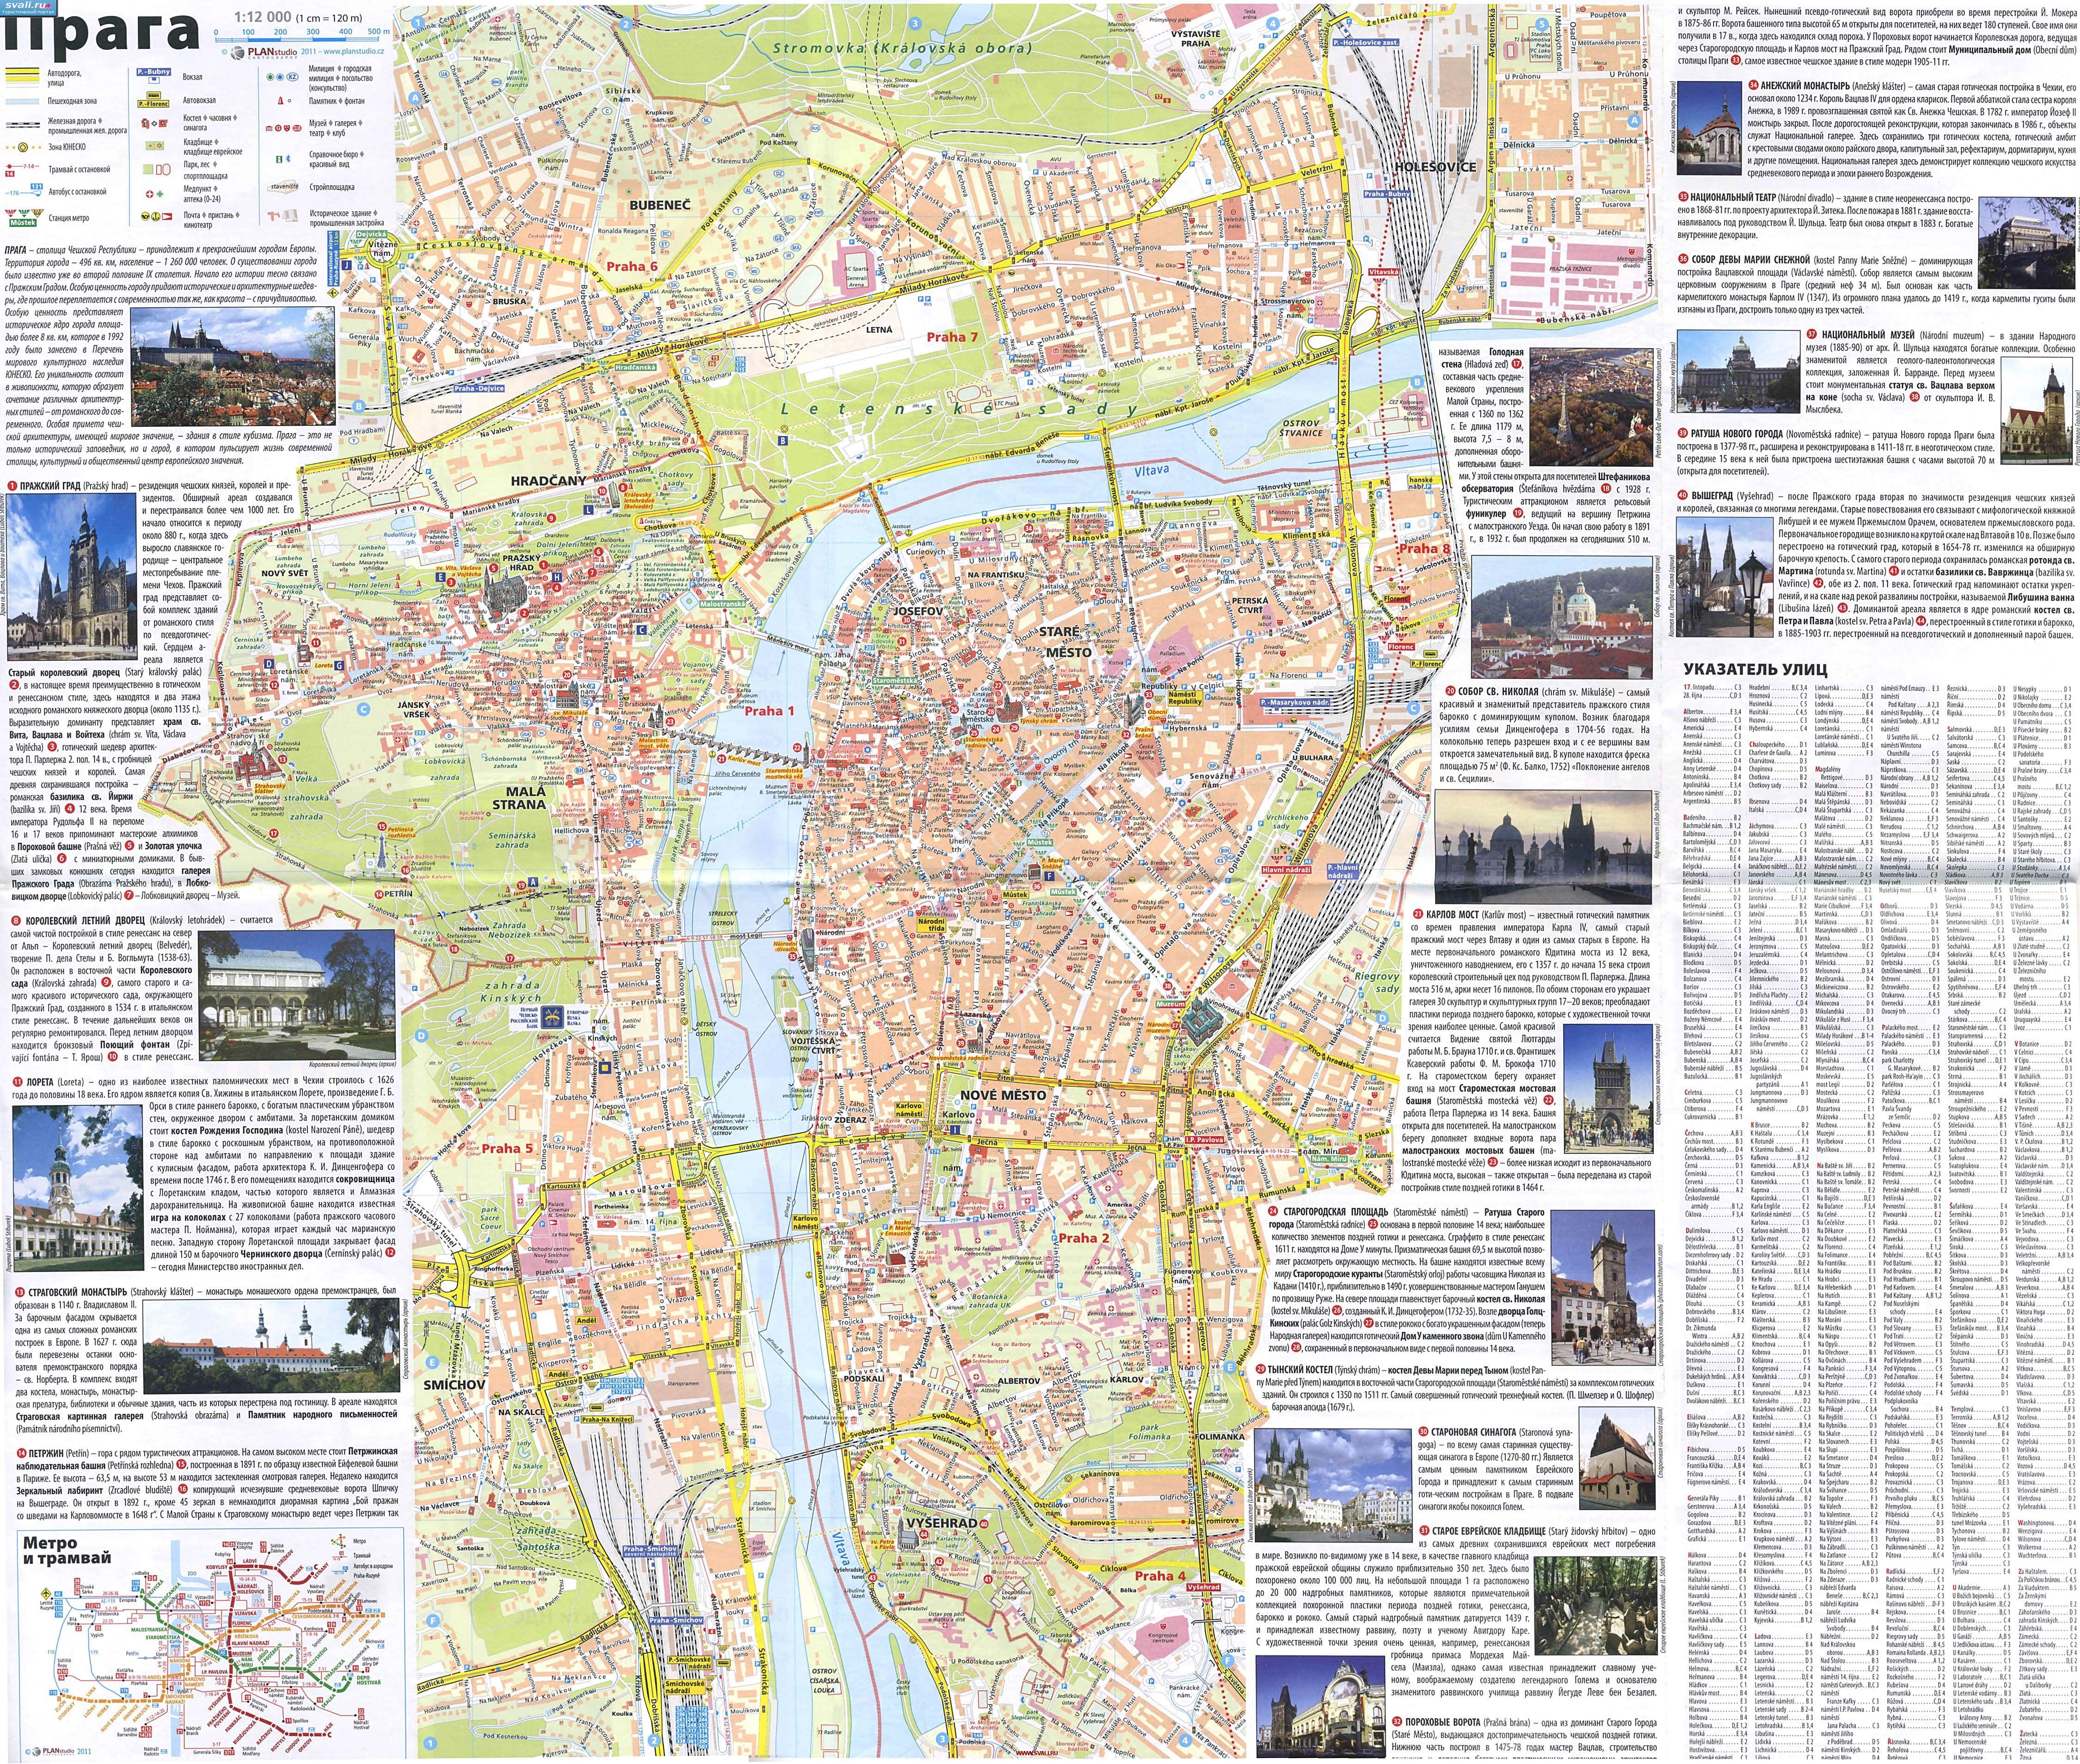 Подробная карта исторического центра Праги с фотографиями описанием достопримечательностей на русском языке, Чехия.